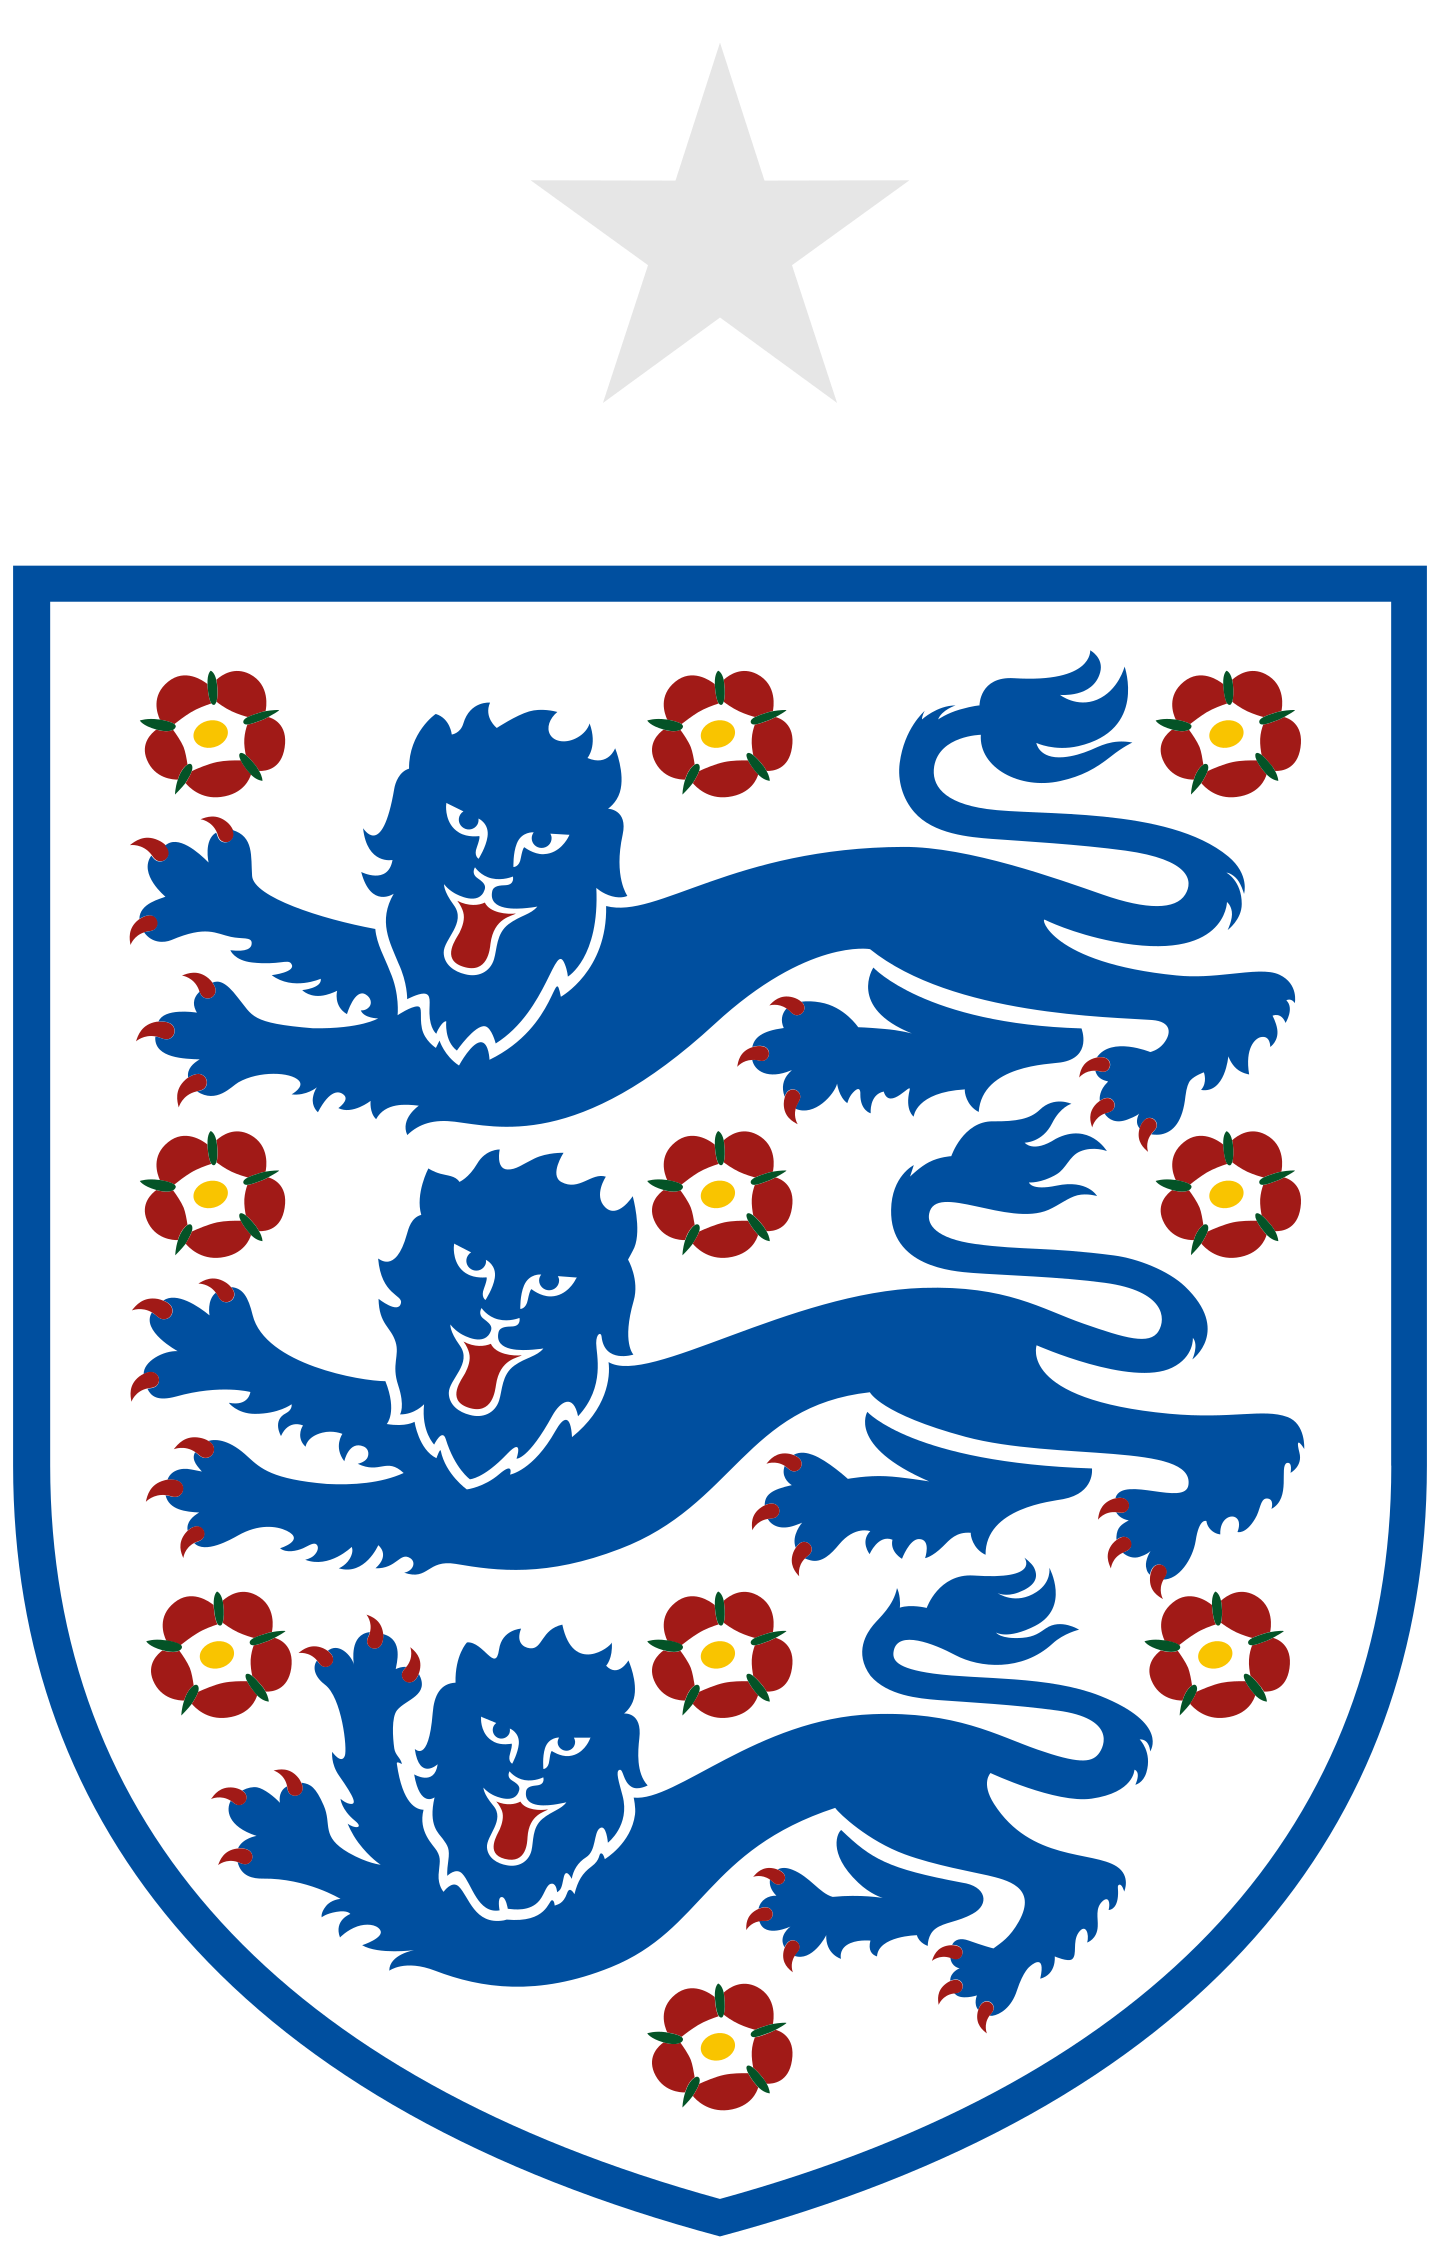 england national team logo 2 - England National Football Team Logo